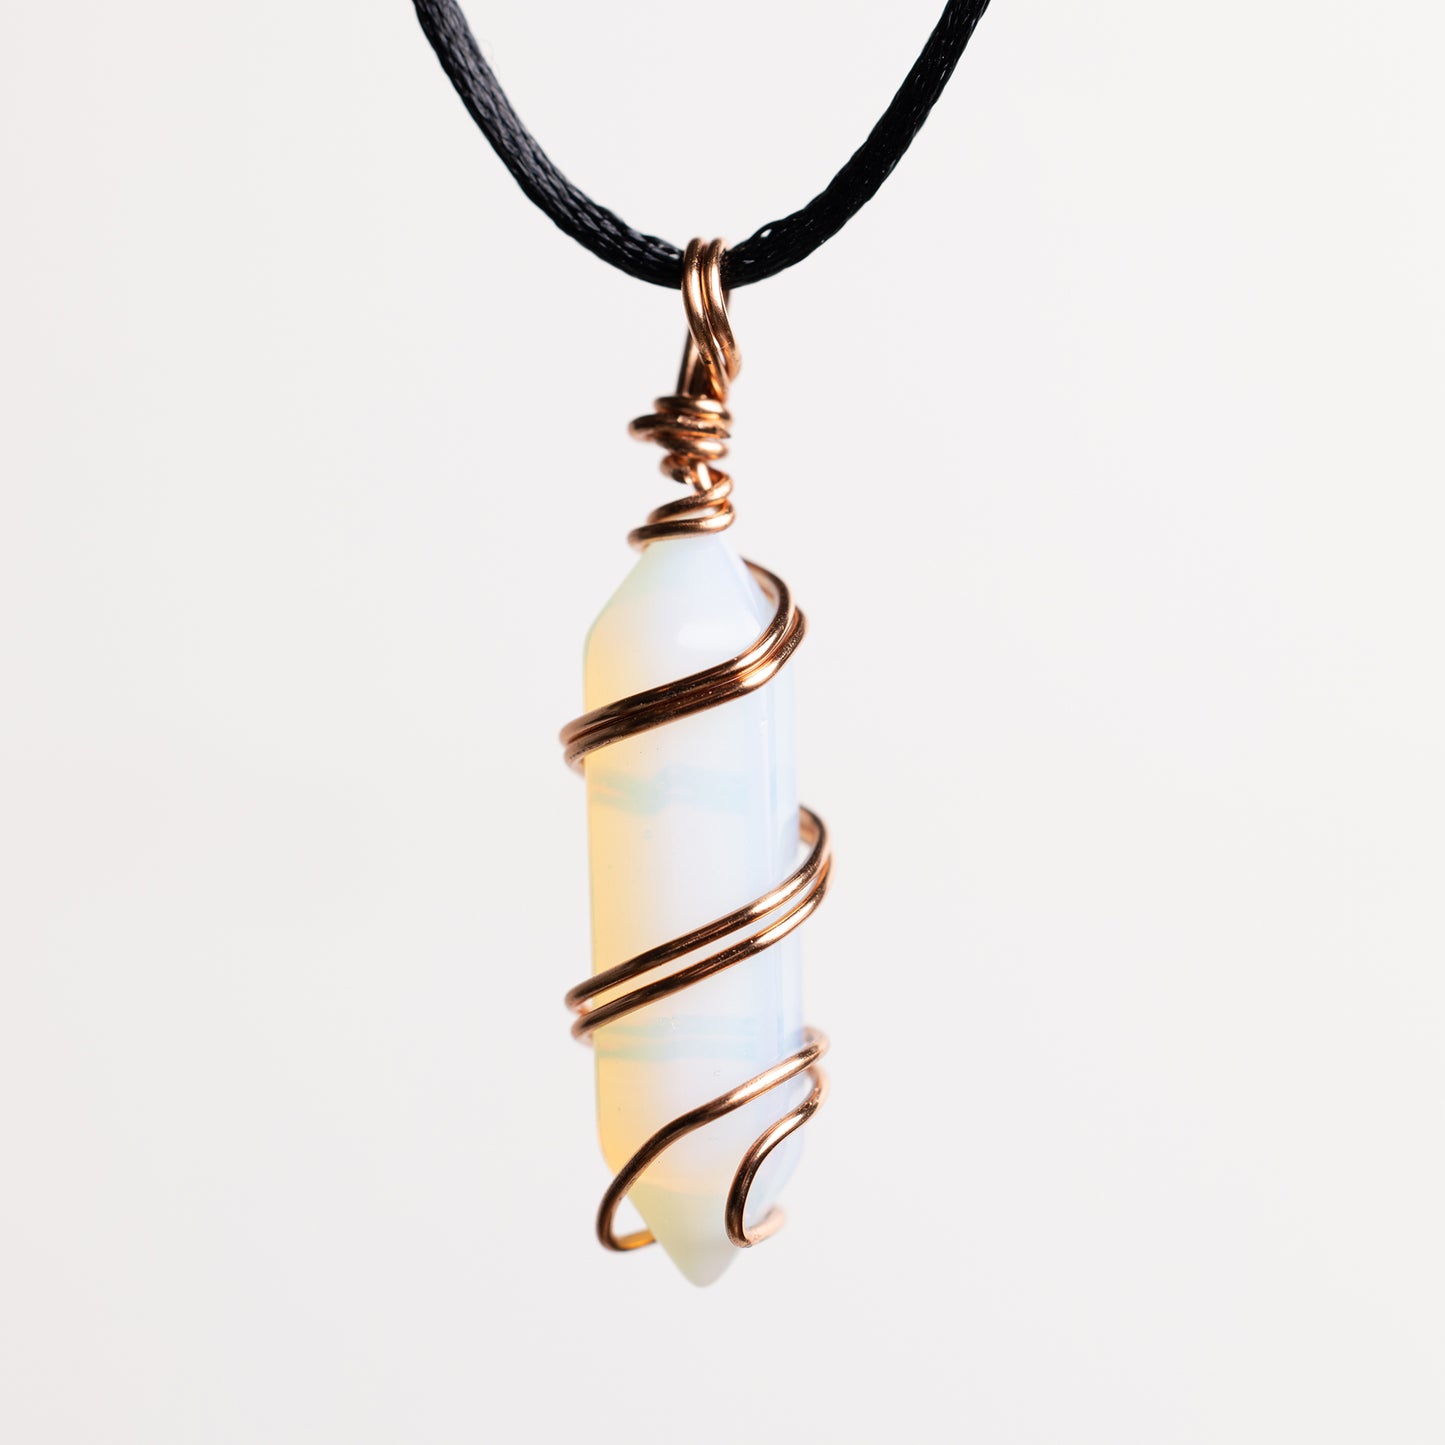 OPAL IN SKY "Opalite" Handmade Necklace